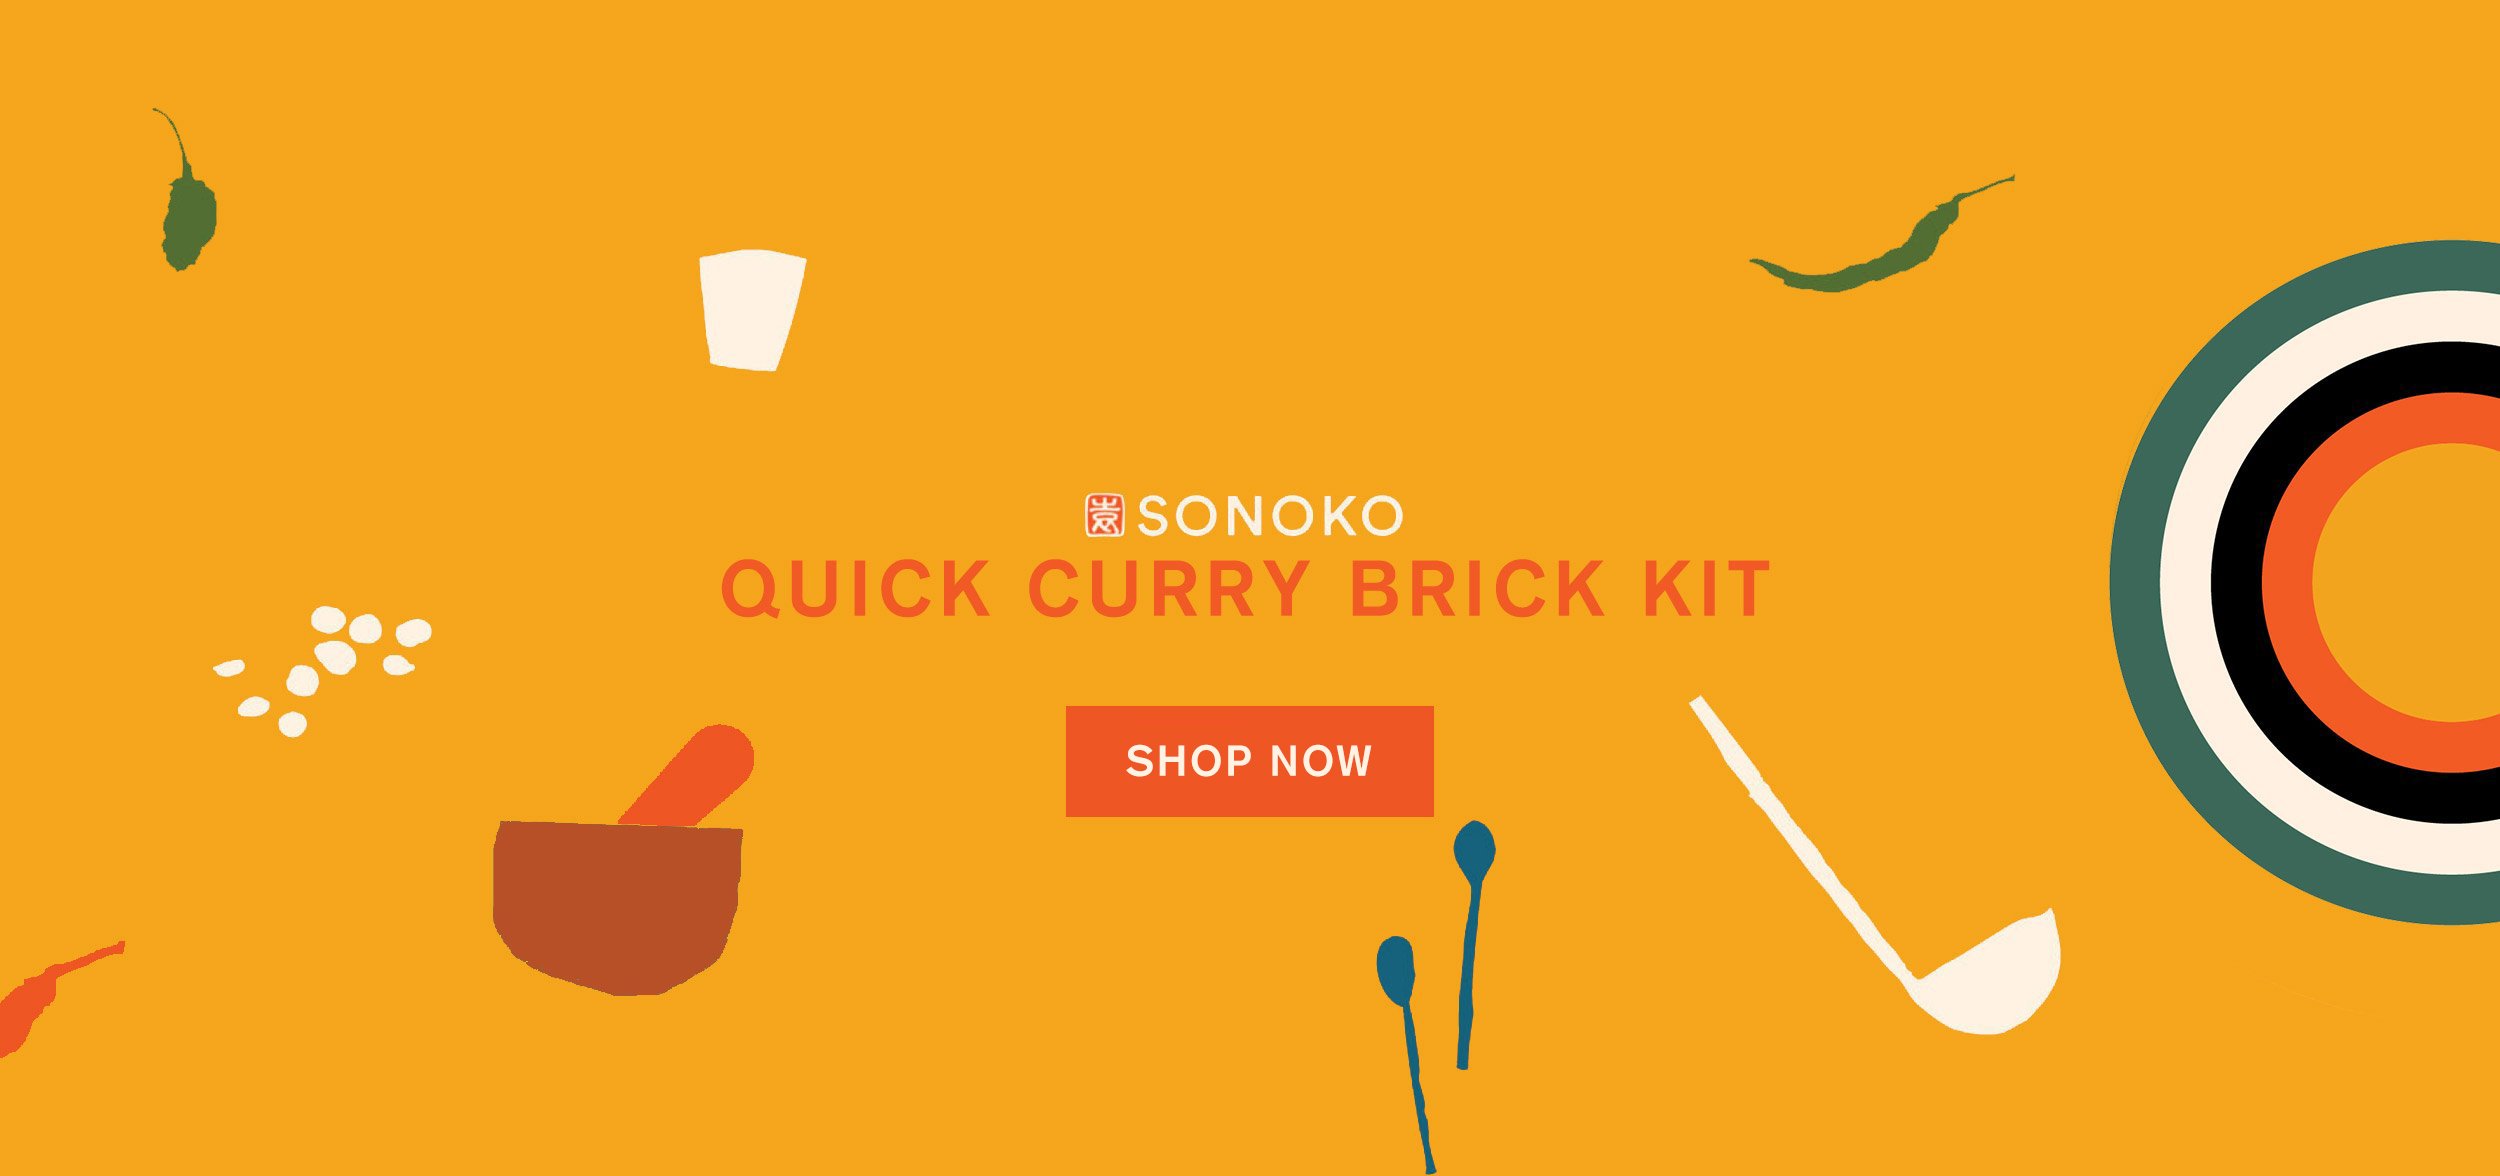 Sonoko Quick Curry Brick Kit